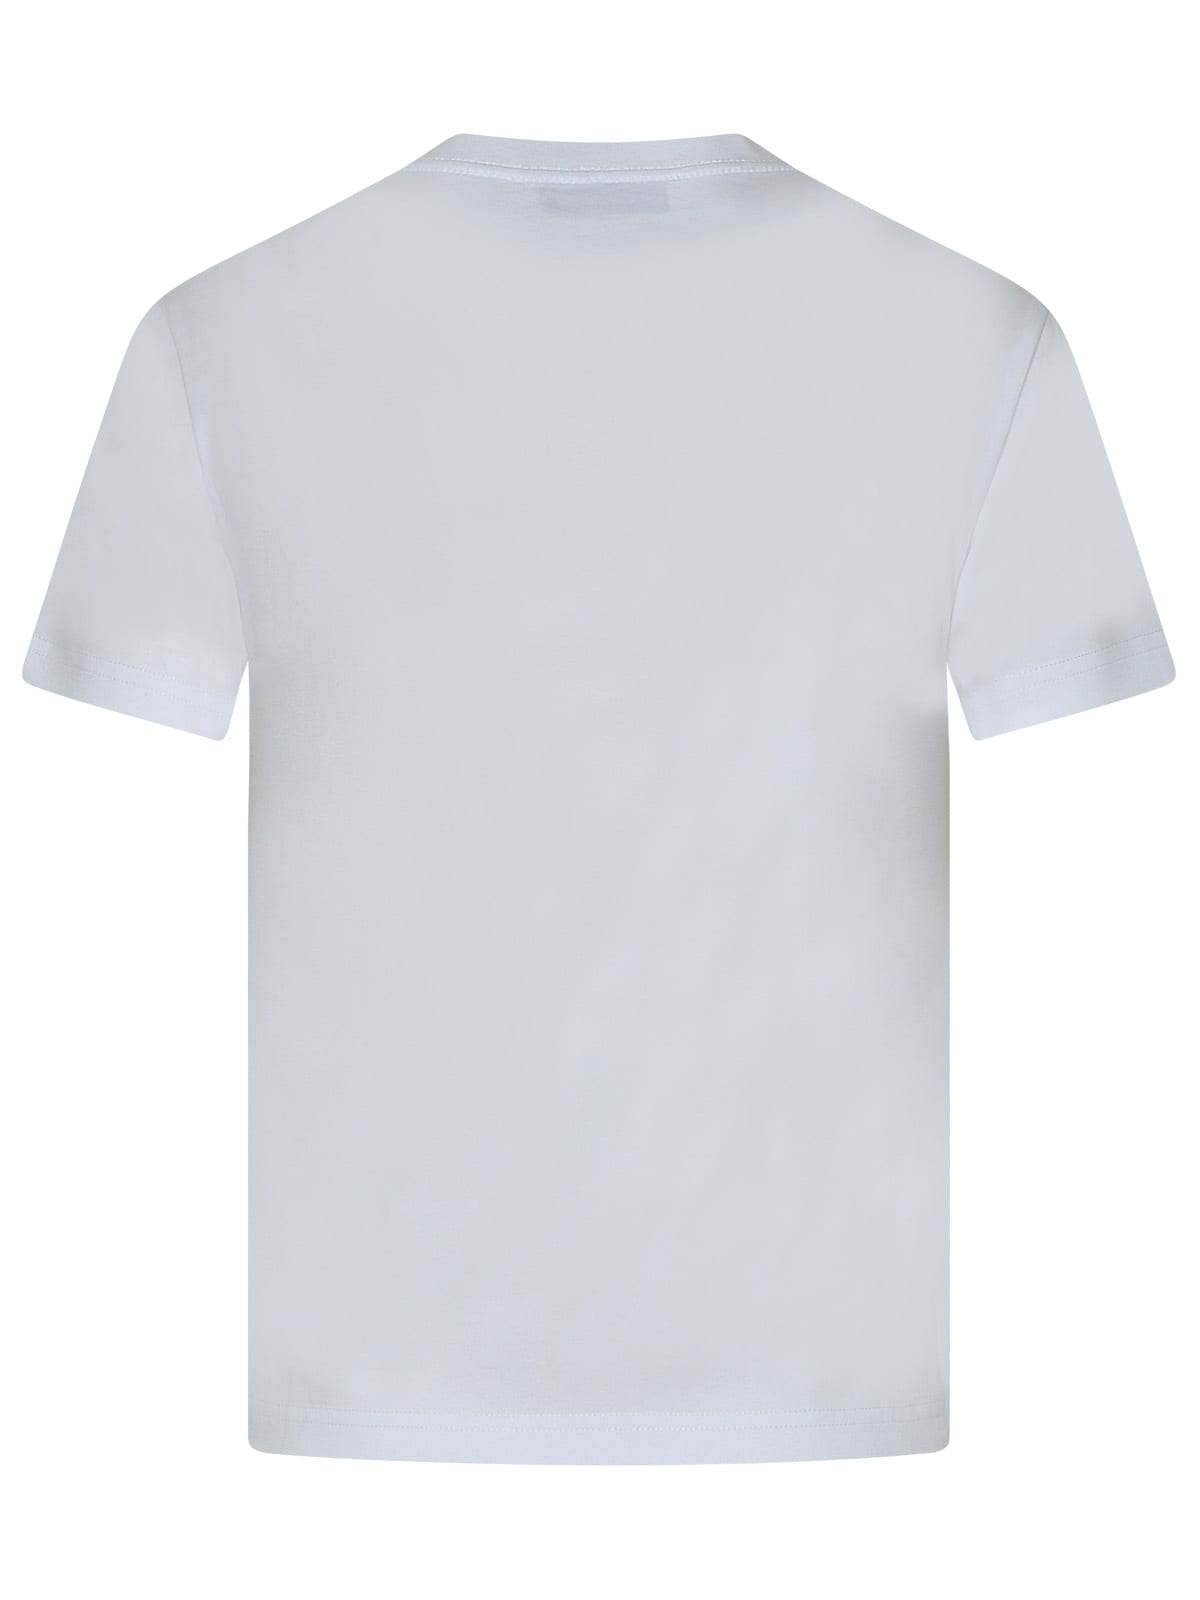 Shop Lanvin Curb White Cotton T-shirt